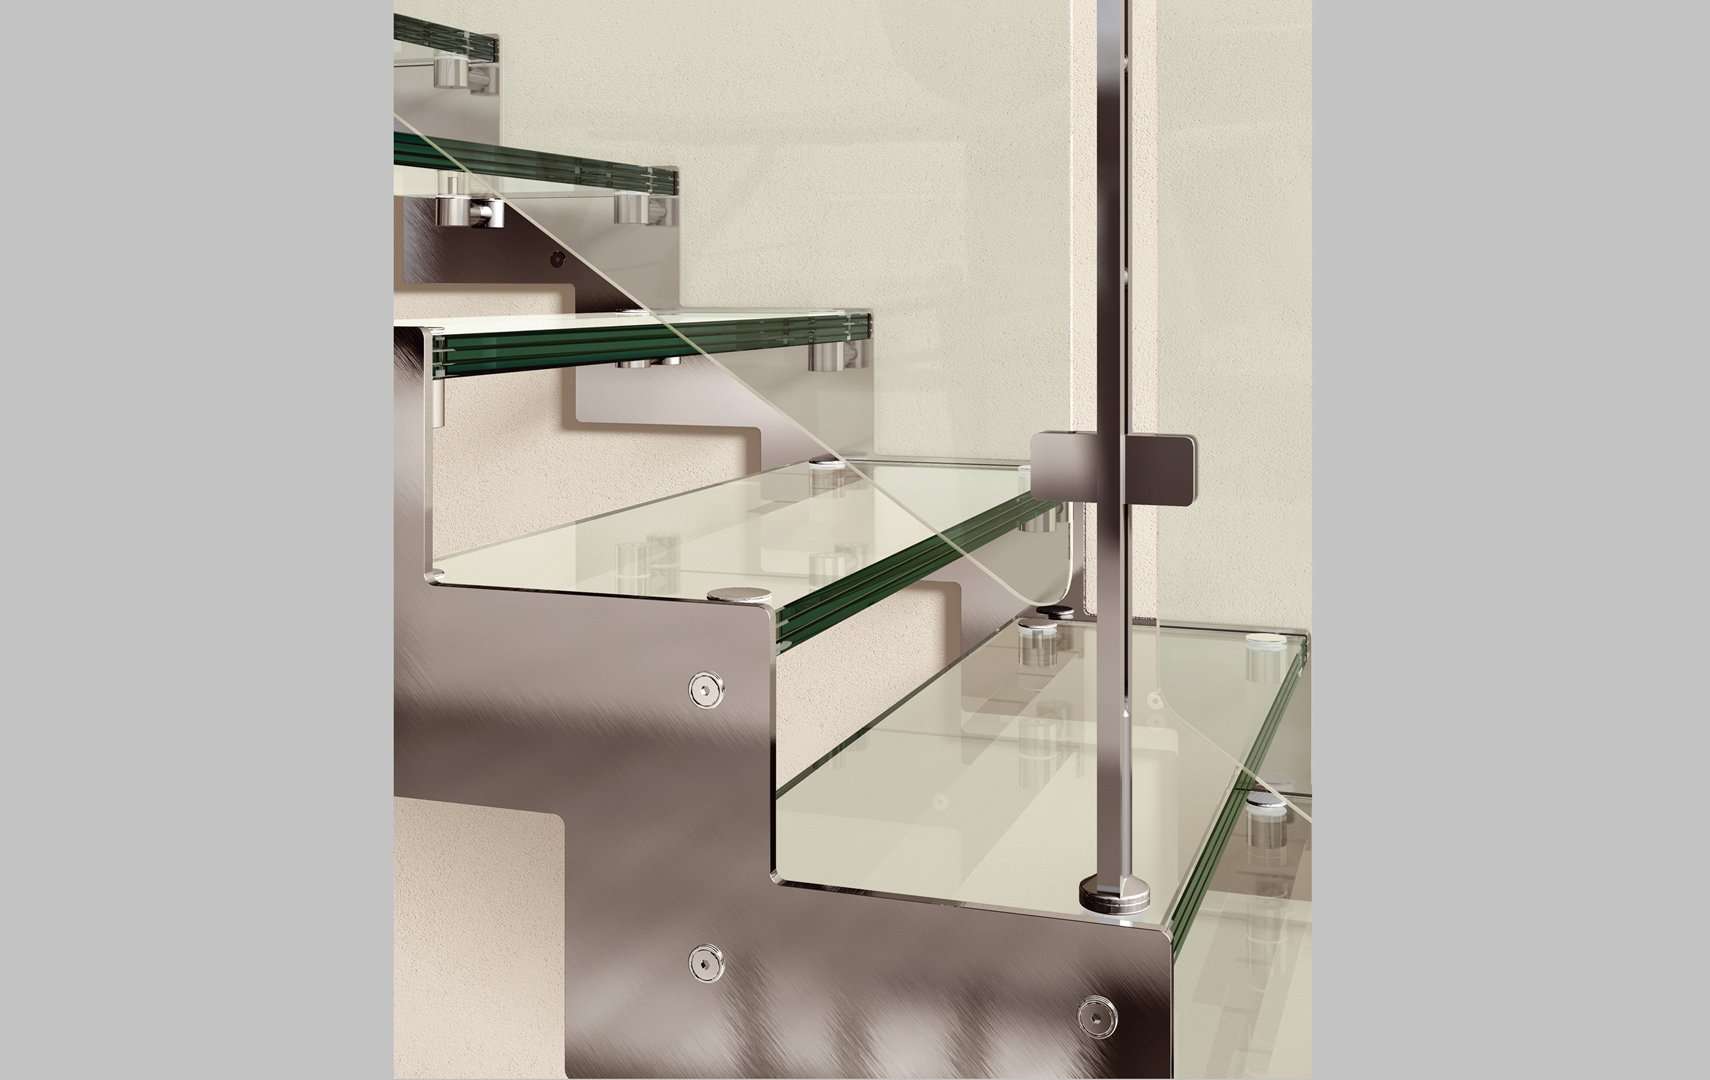 Rexal Glass, Colección del vidrio